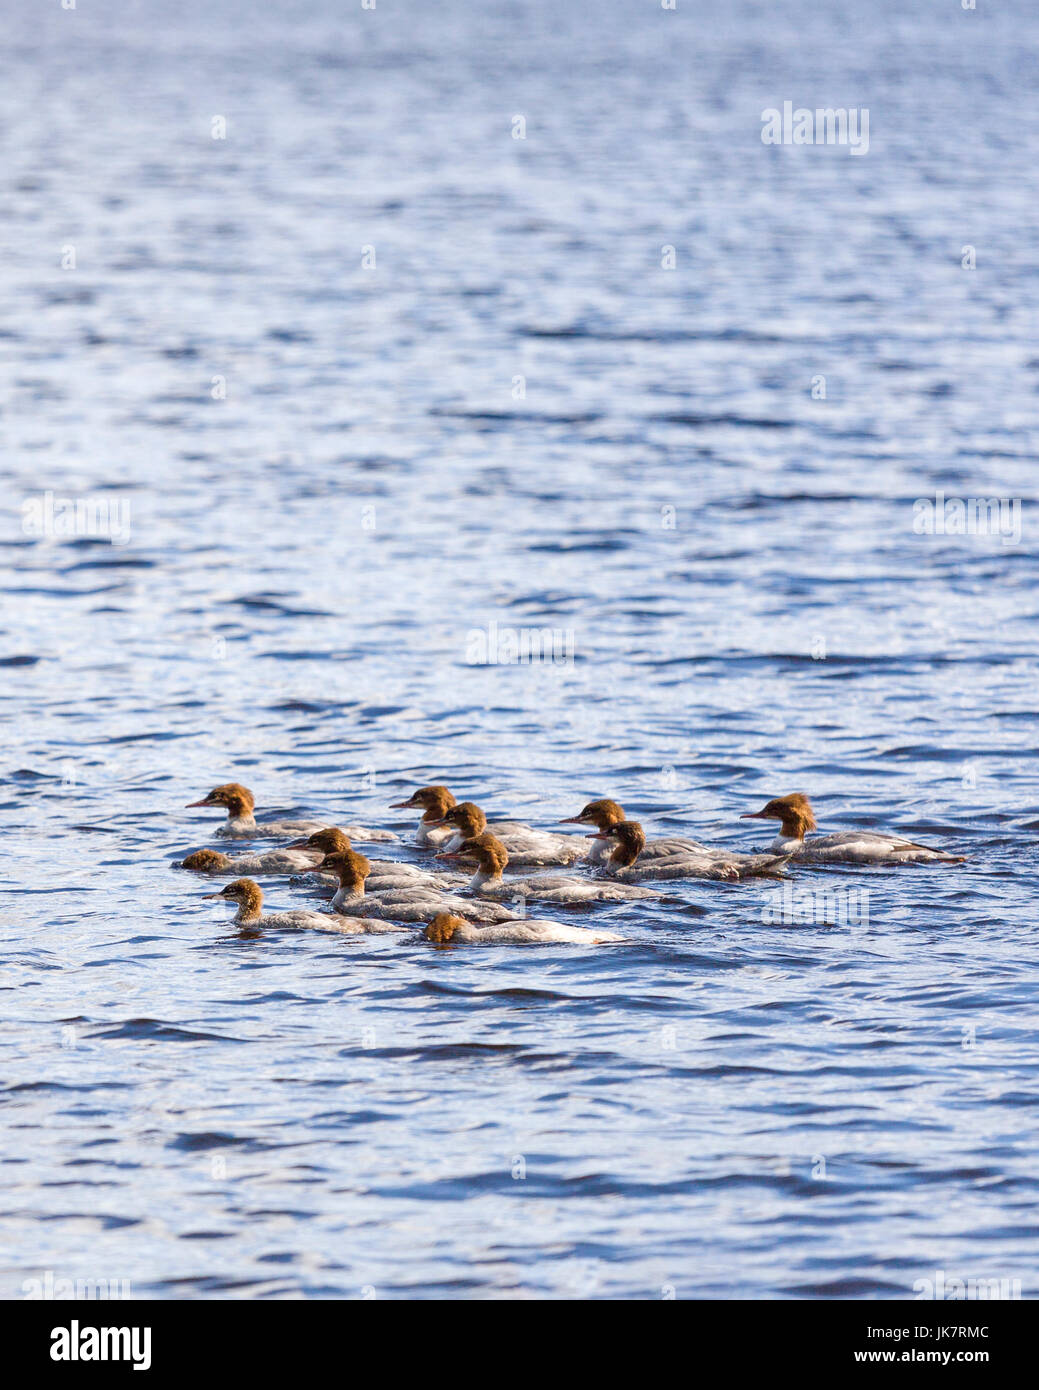 Grupo de jóvenes Merganser común (N. América) o Goosander (Eurasia) (Mergus merganser) en el lago Uspen, Lerum, Suecia Foto de stock